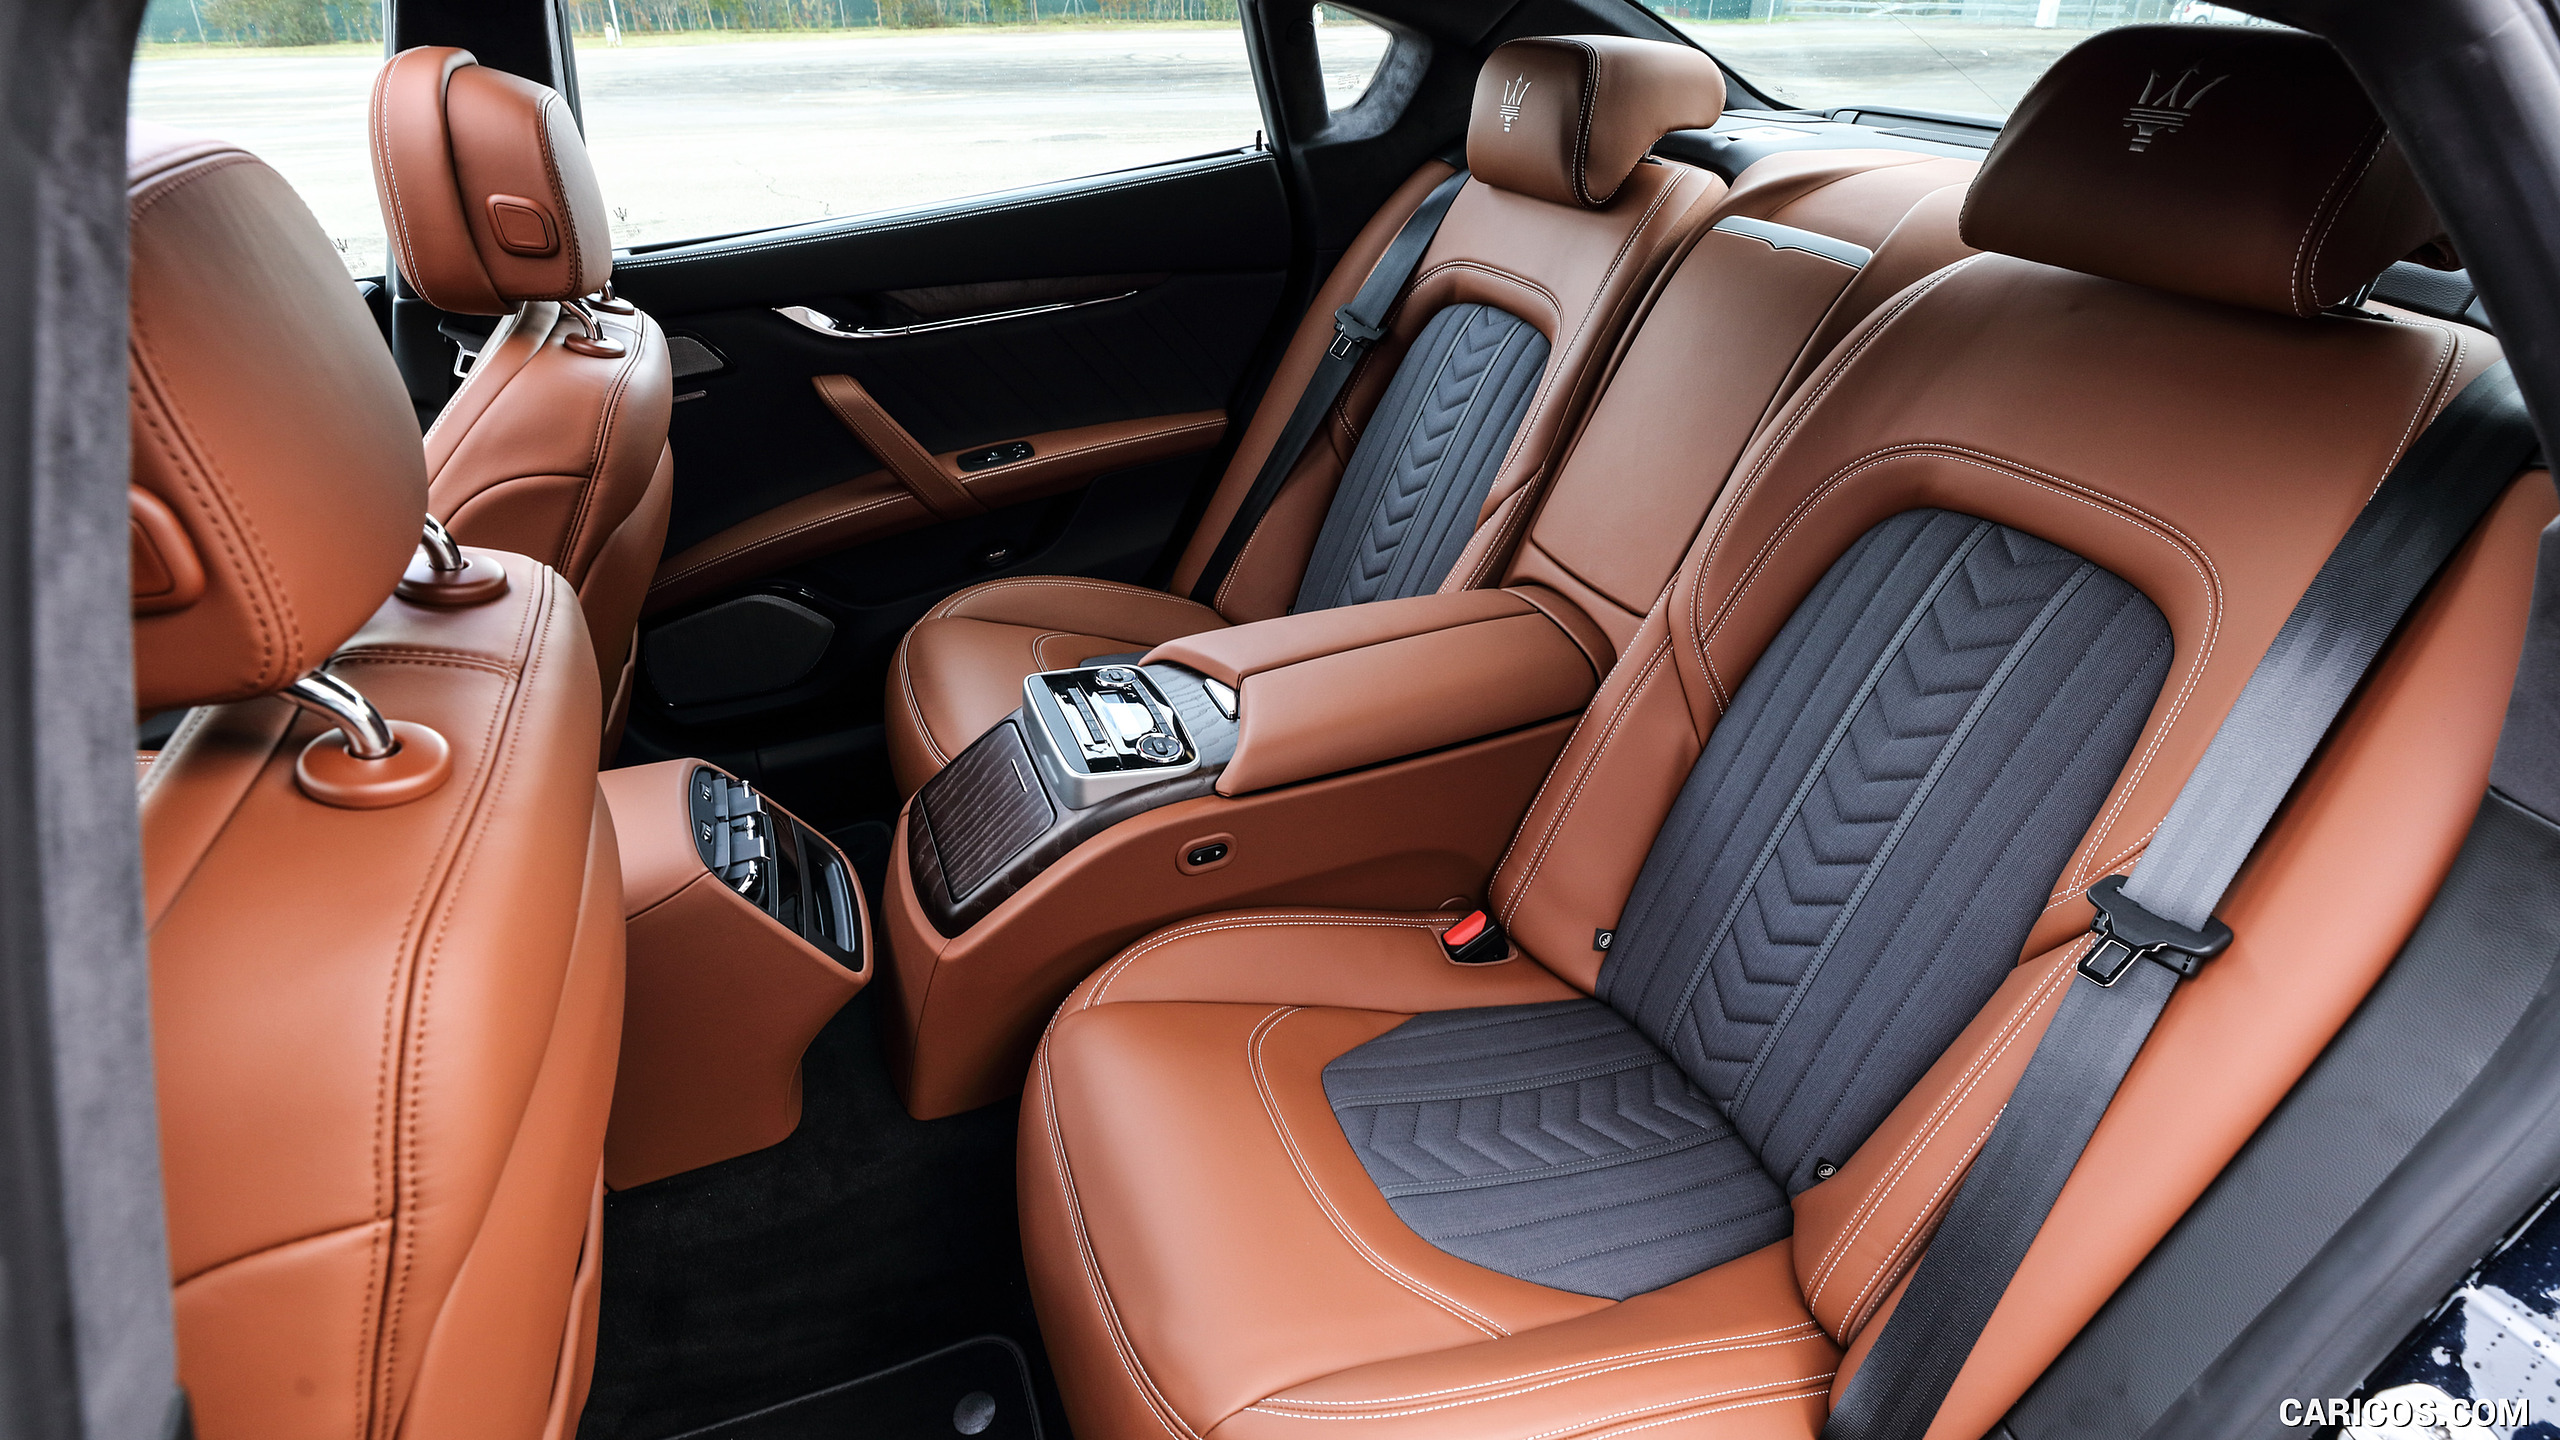 2021 Maserati Quattroporte SQ4 GranLusso - Interior, Rear Seats, #18 of 18